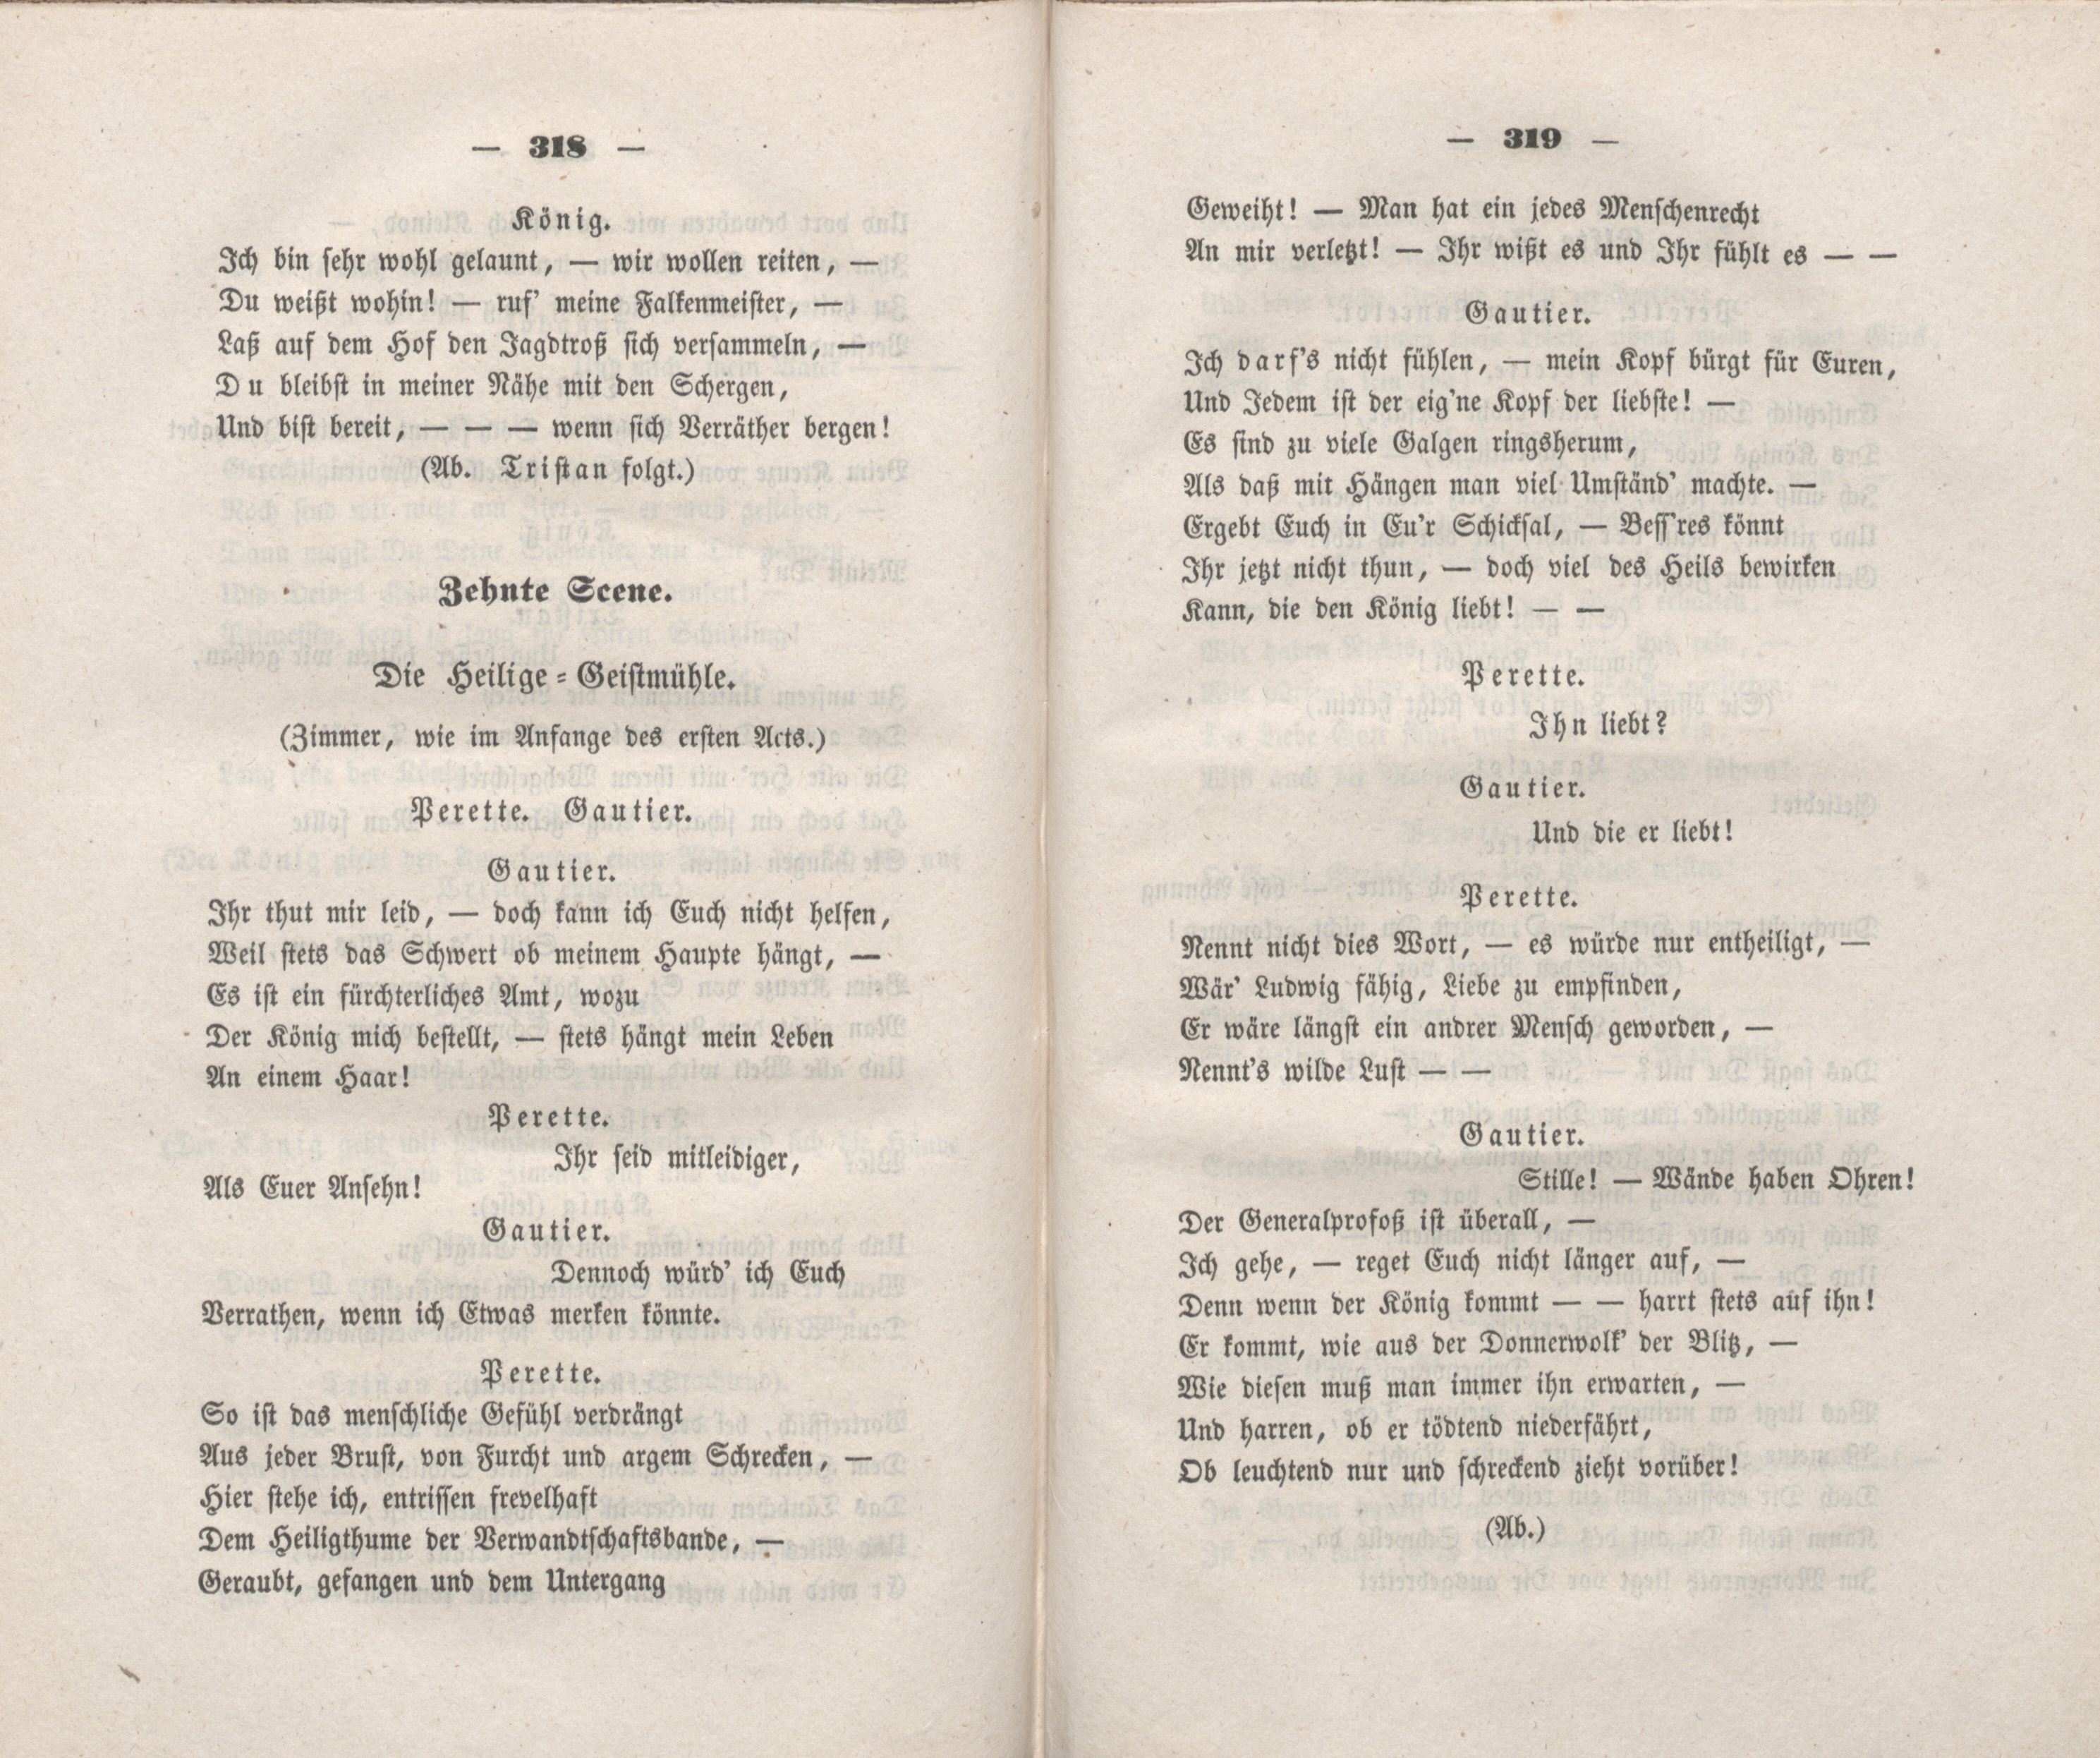 Baltisches Album (1848) | 170. (318-319) Main body of text